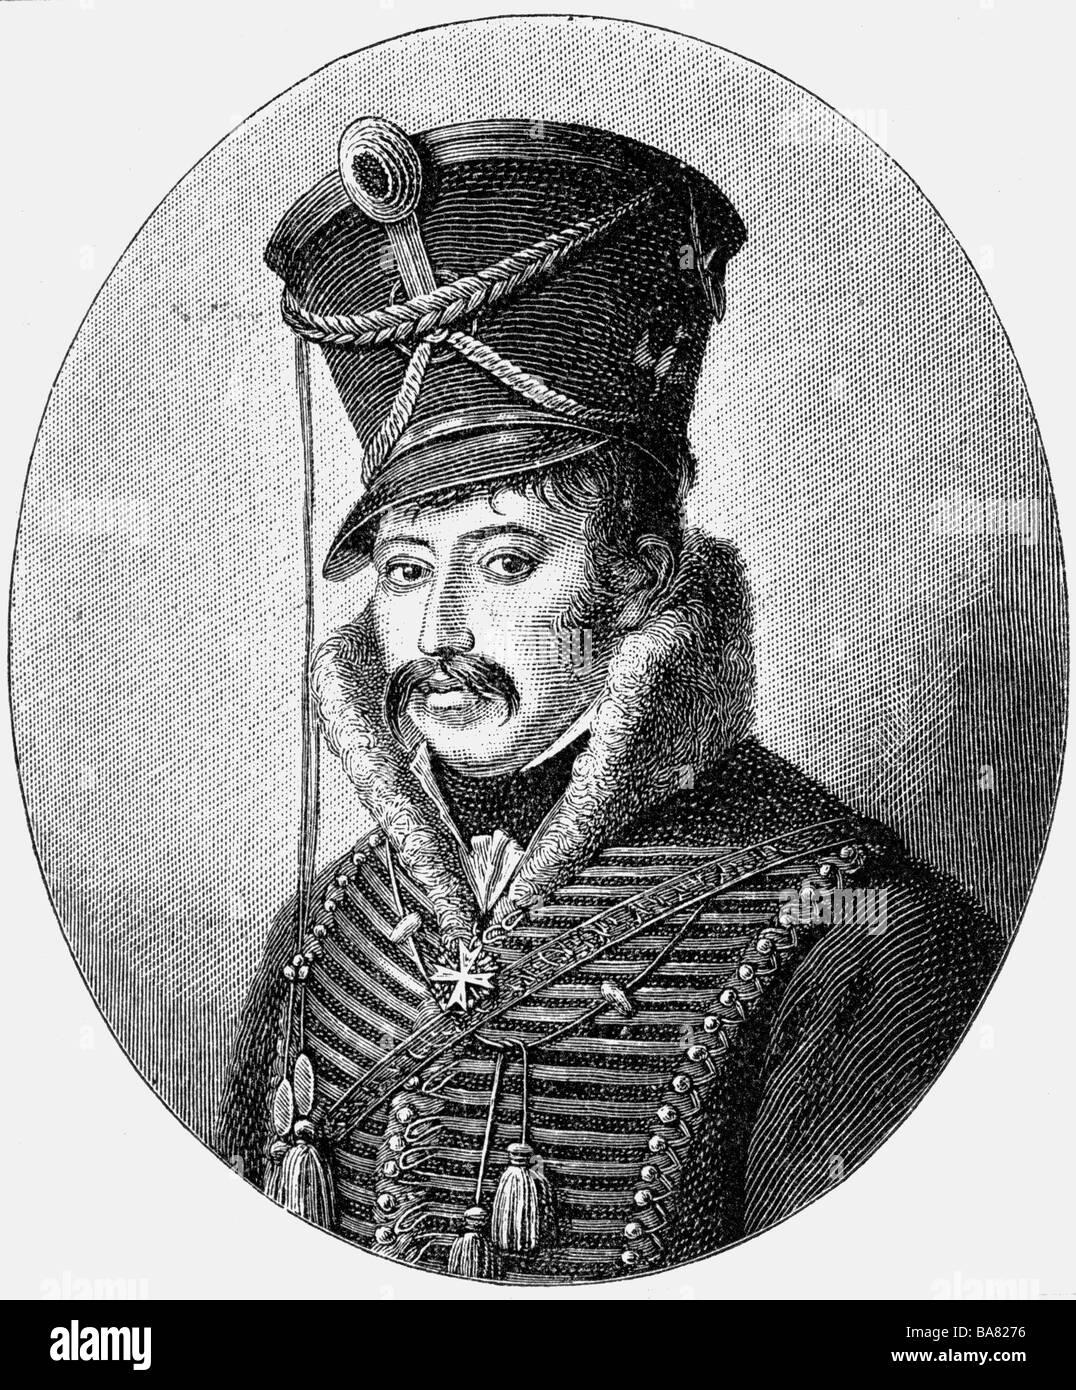 Ferdinand von Schill,, 6.1.1776 - 31.5.1809, officier de l'armée prussienne, portrait, gravure sur cuivre par Ludwig Buchhorn, 19e siècle, l'artiste a le droit d'auteur , de ne pas être effacé Banque D'Images